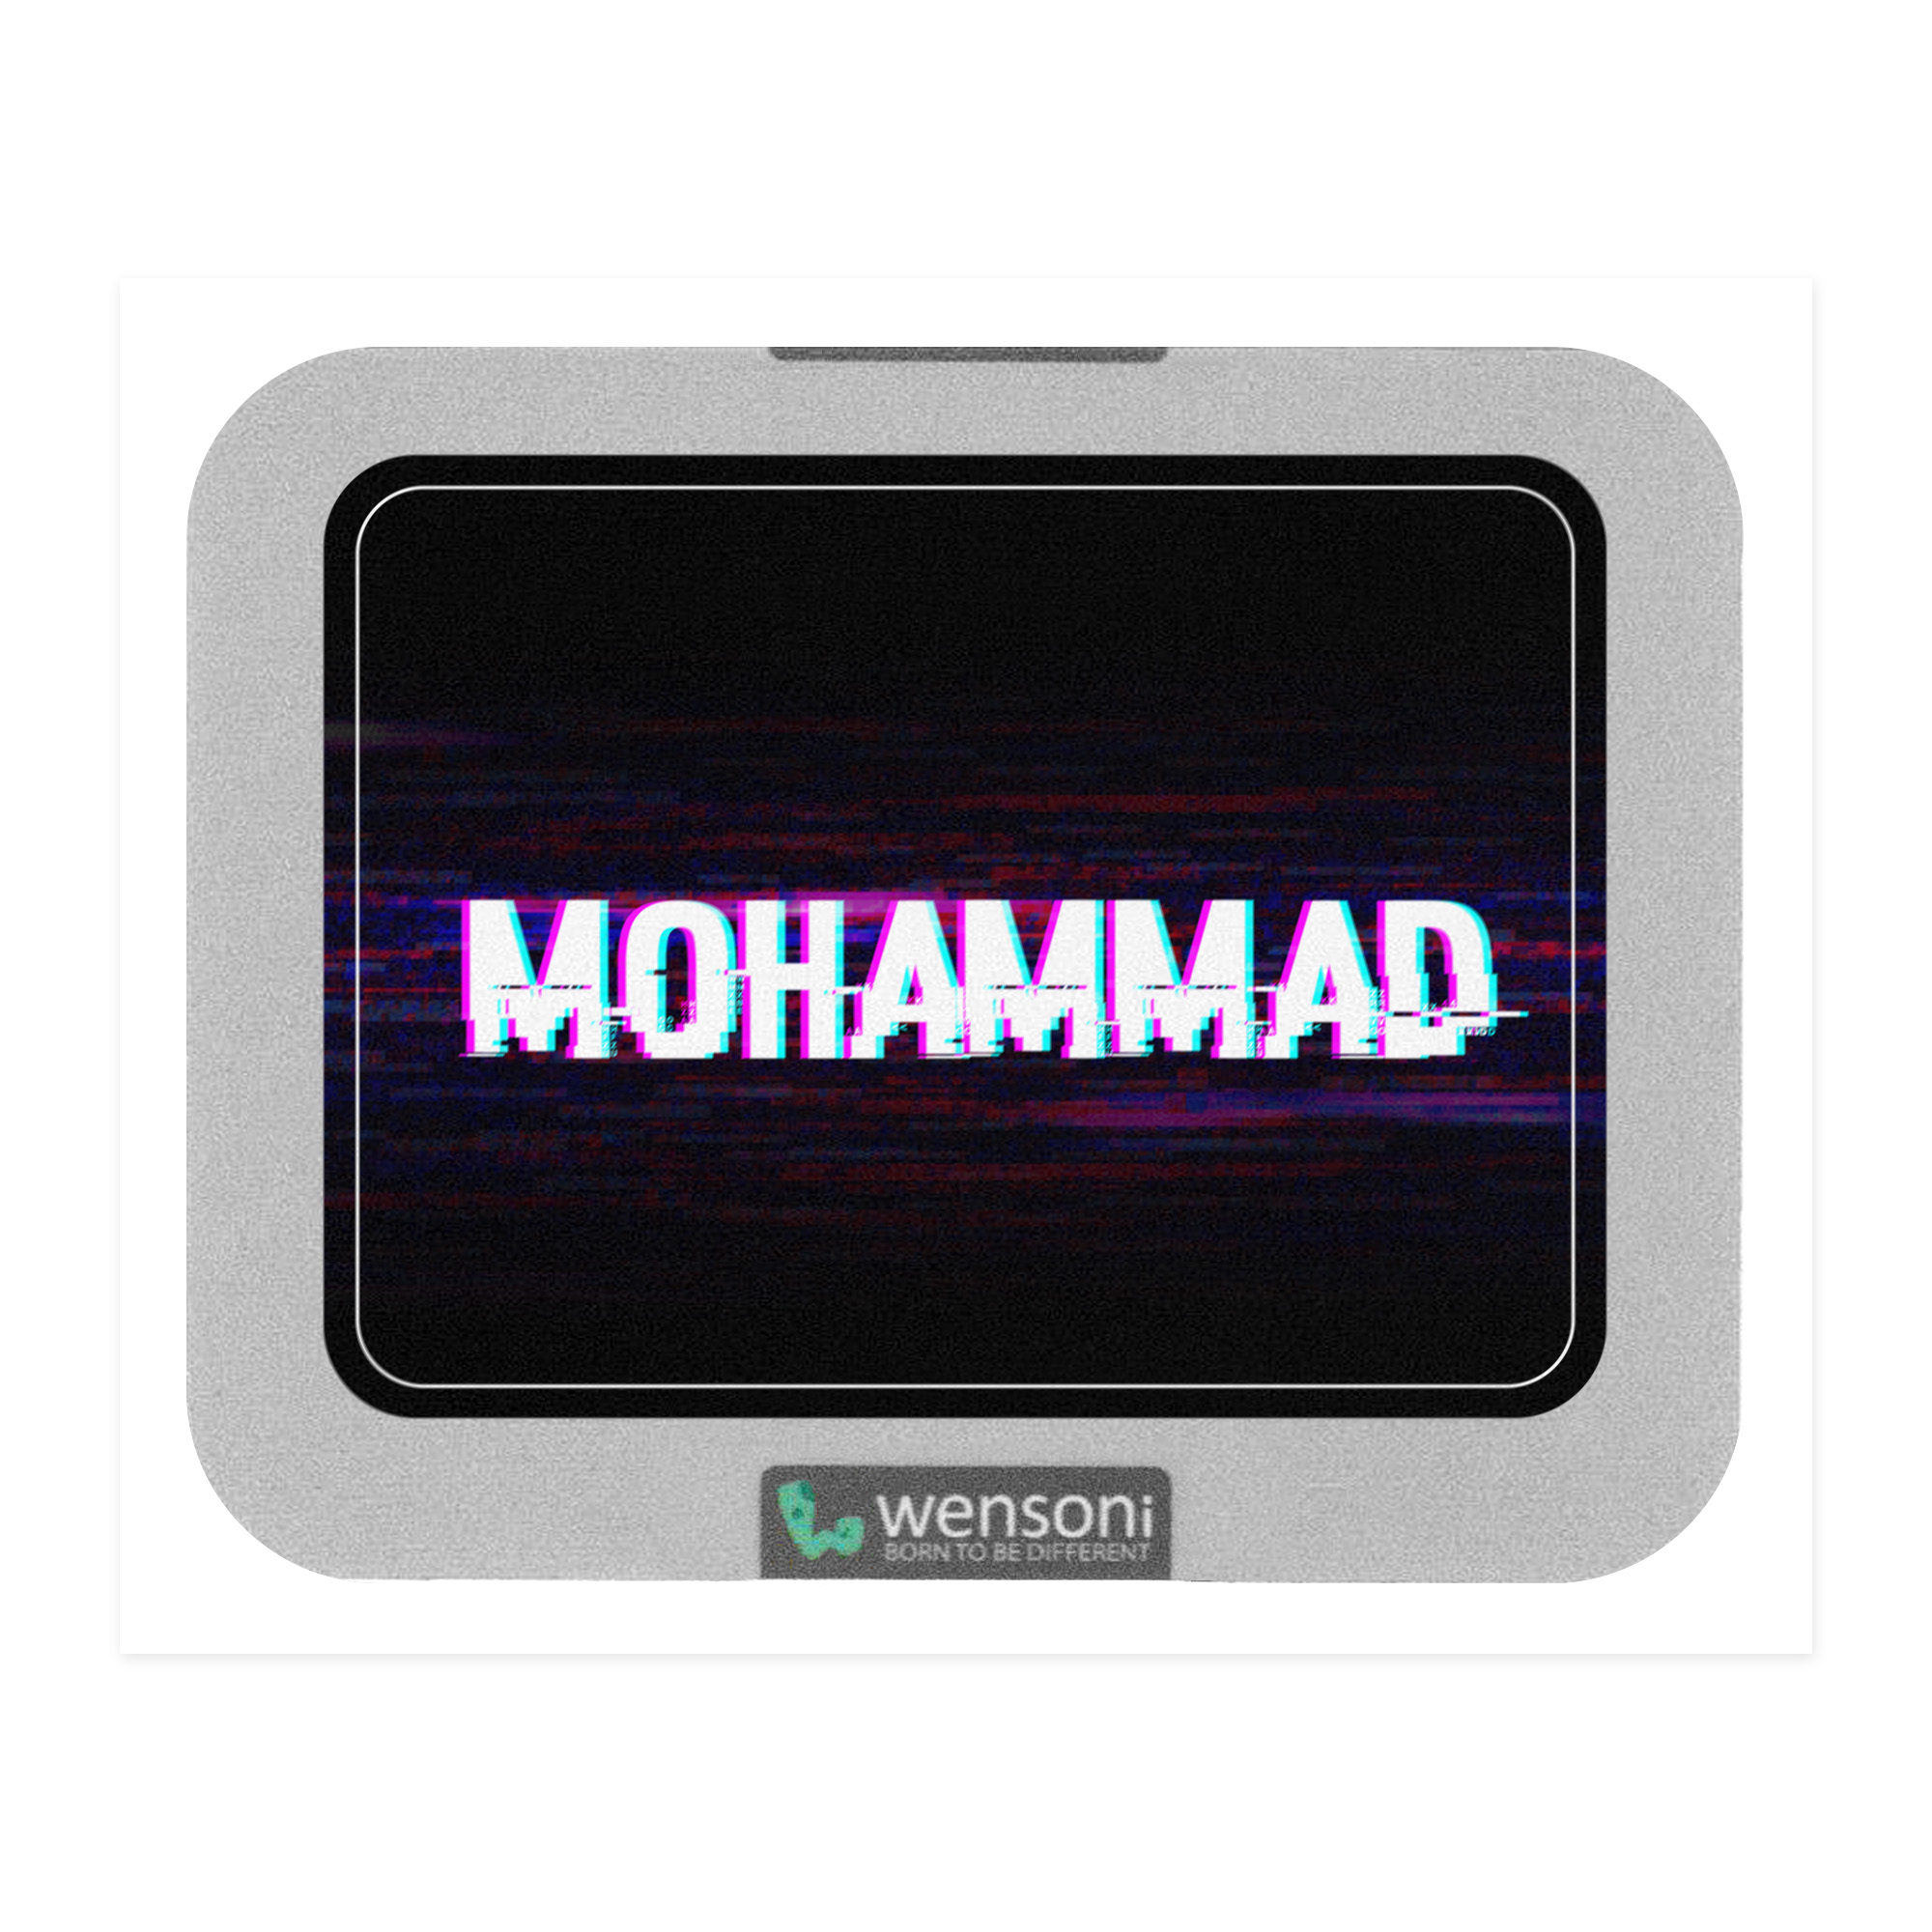 برچسب تاچ پد دسته پلی استیشن 4 ونسونی طرح MOHAMMAD